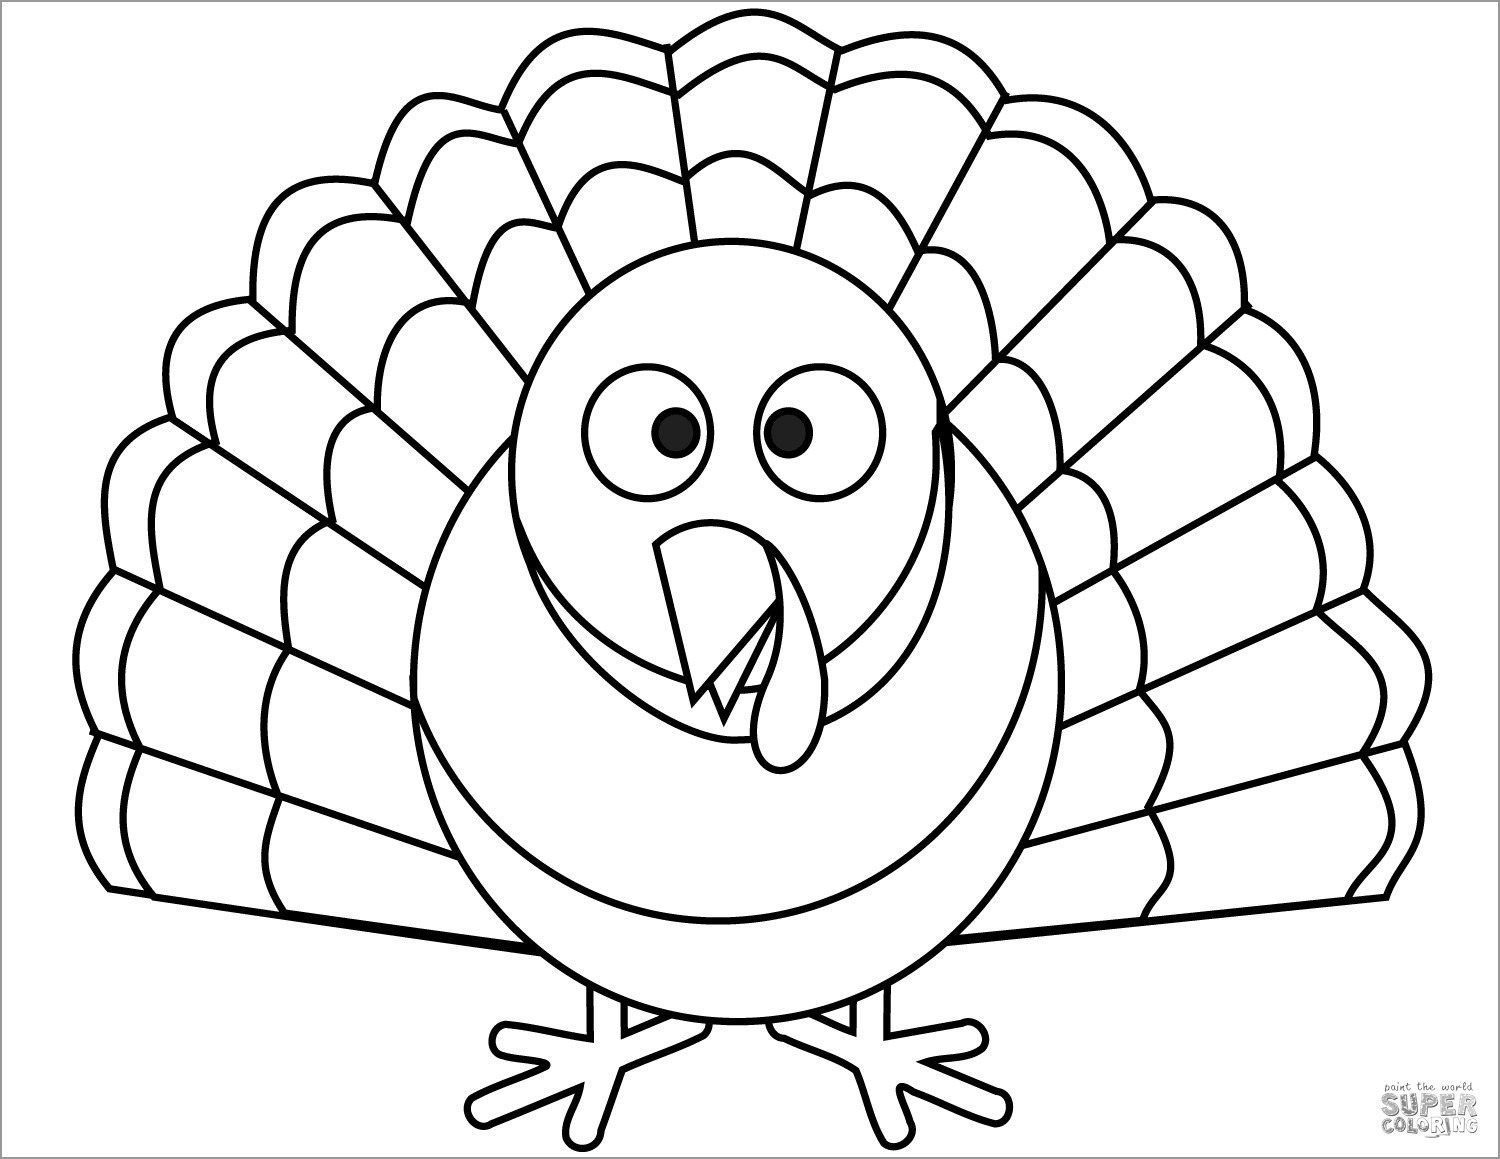 Cartoon Turkey Coloring Page